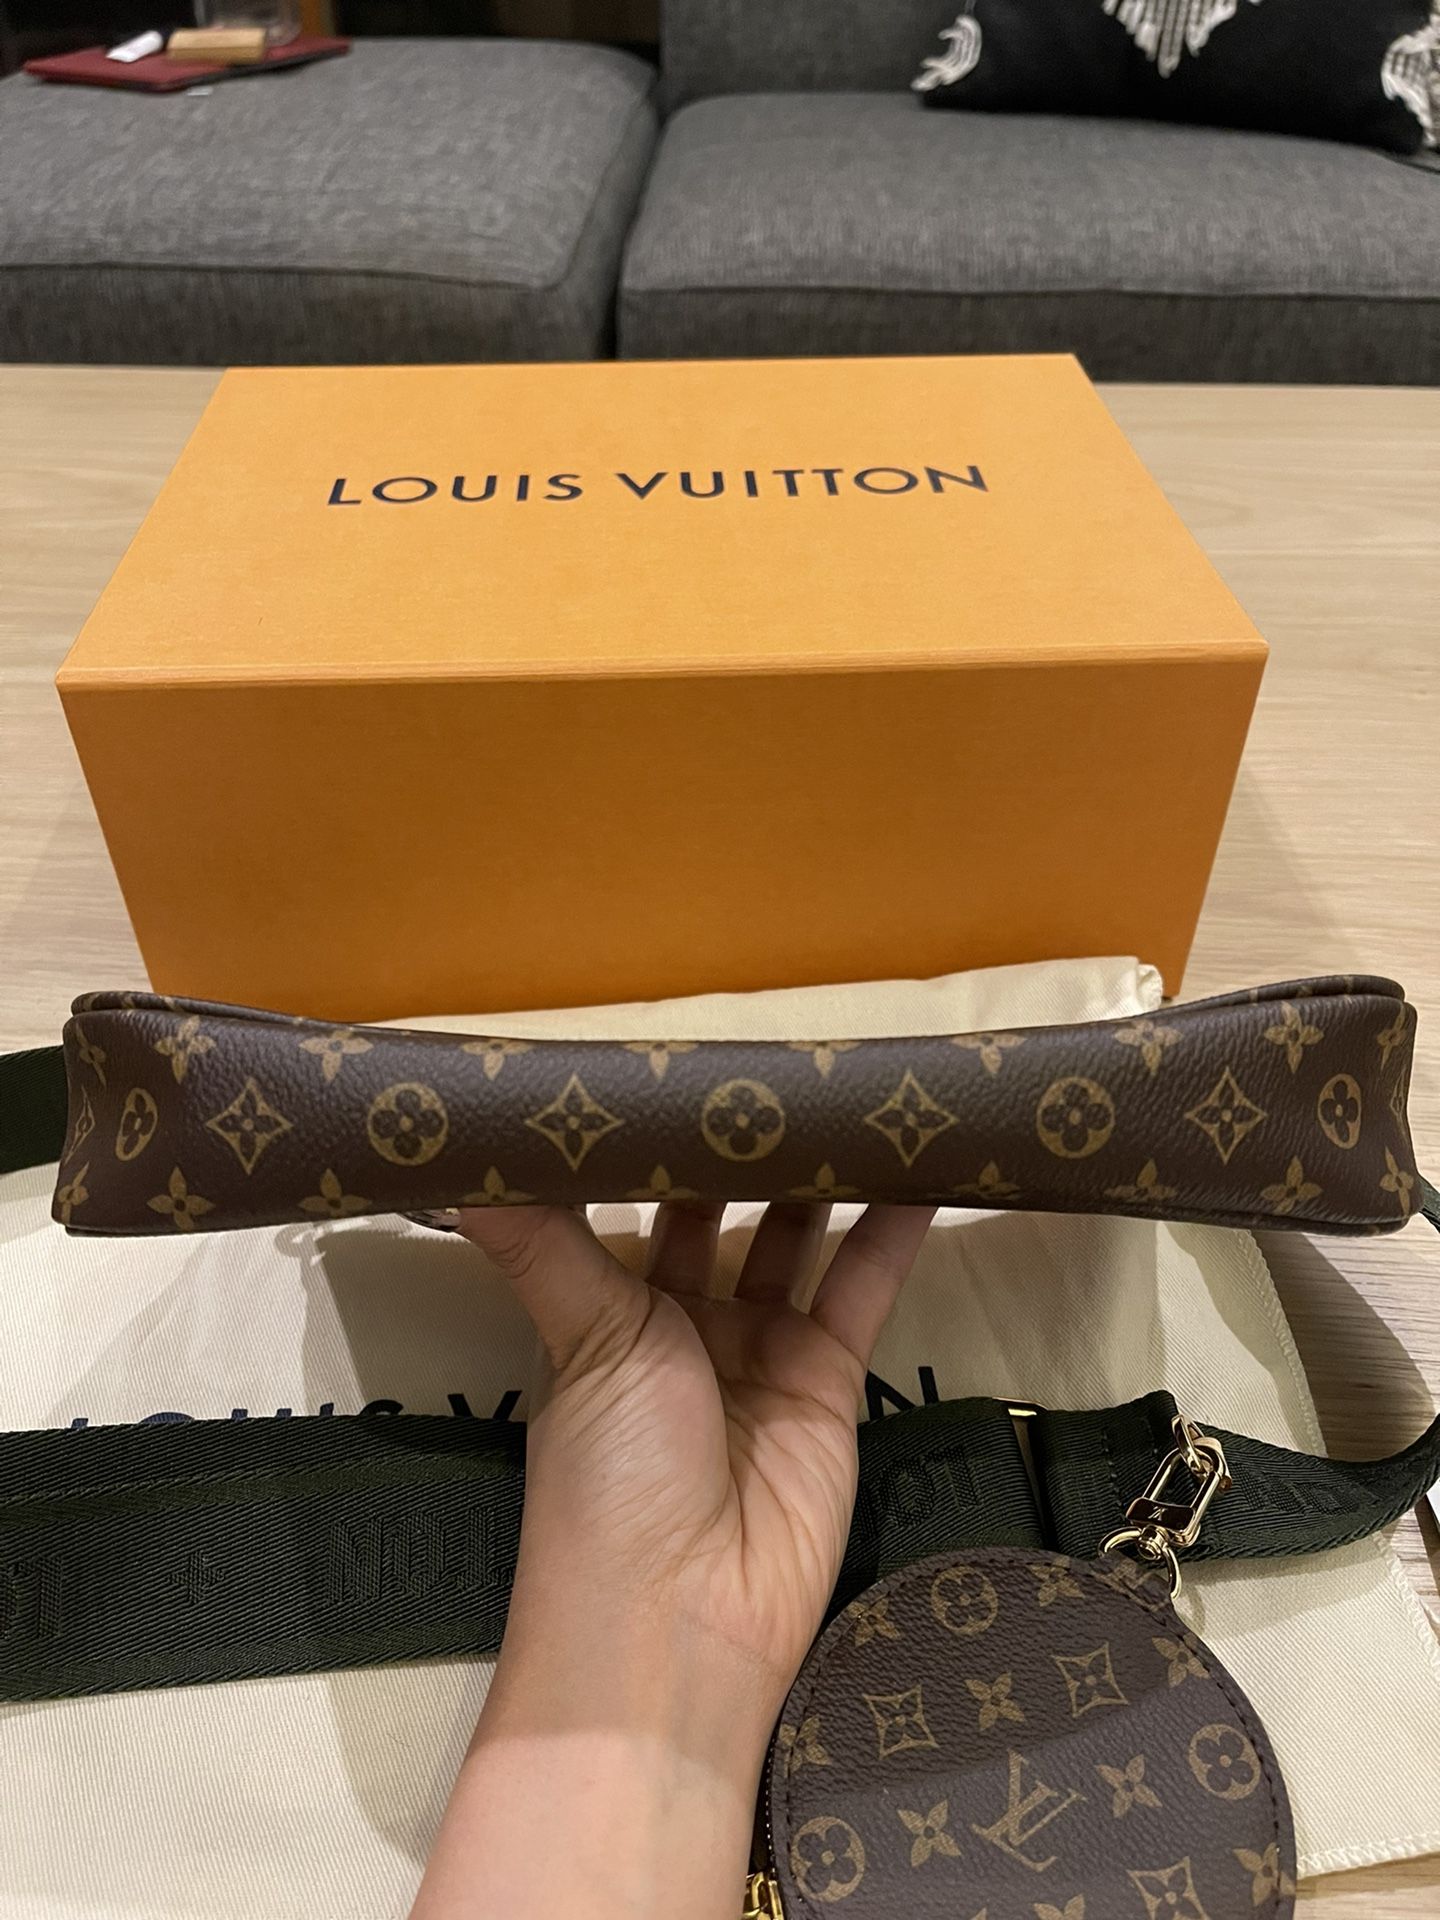 Louis Vuitton Multi Pochette Accessories Monogram Khaki – Coco Approved  Studio